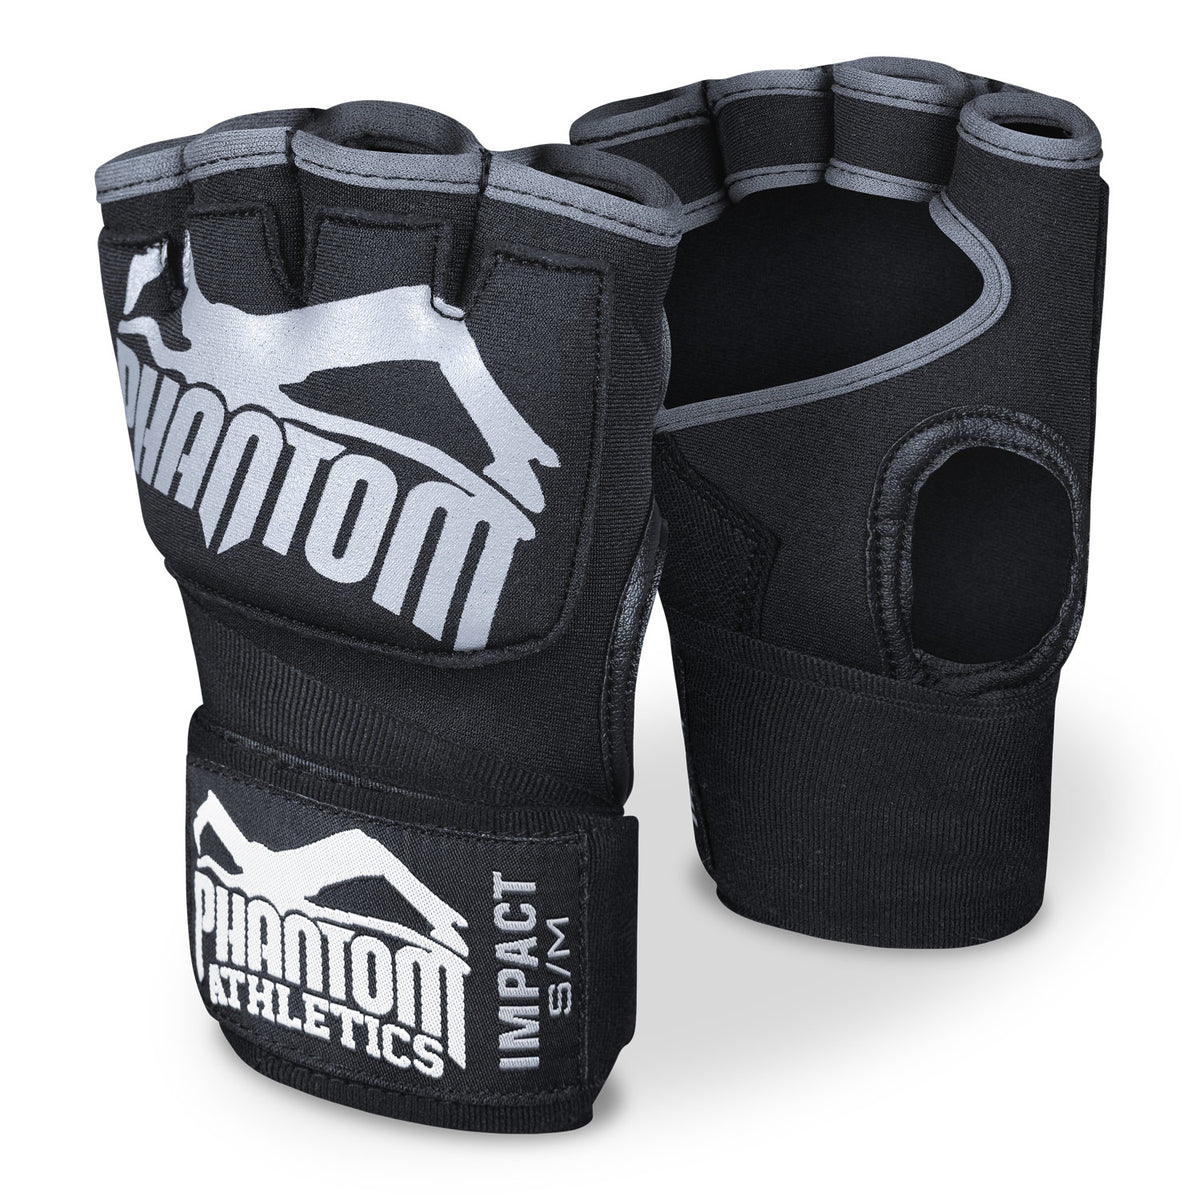 Les bandages de boxe Phantom Impact avec remplissage en gel. Pour plus de protection dans votre entraînement d'arts martiaux.